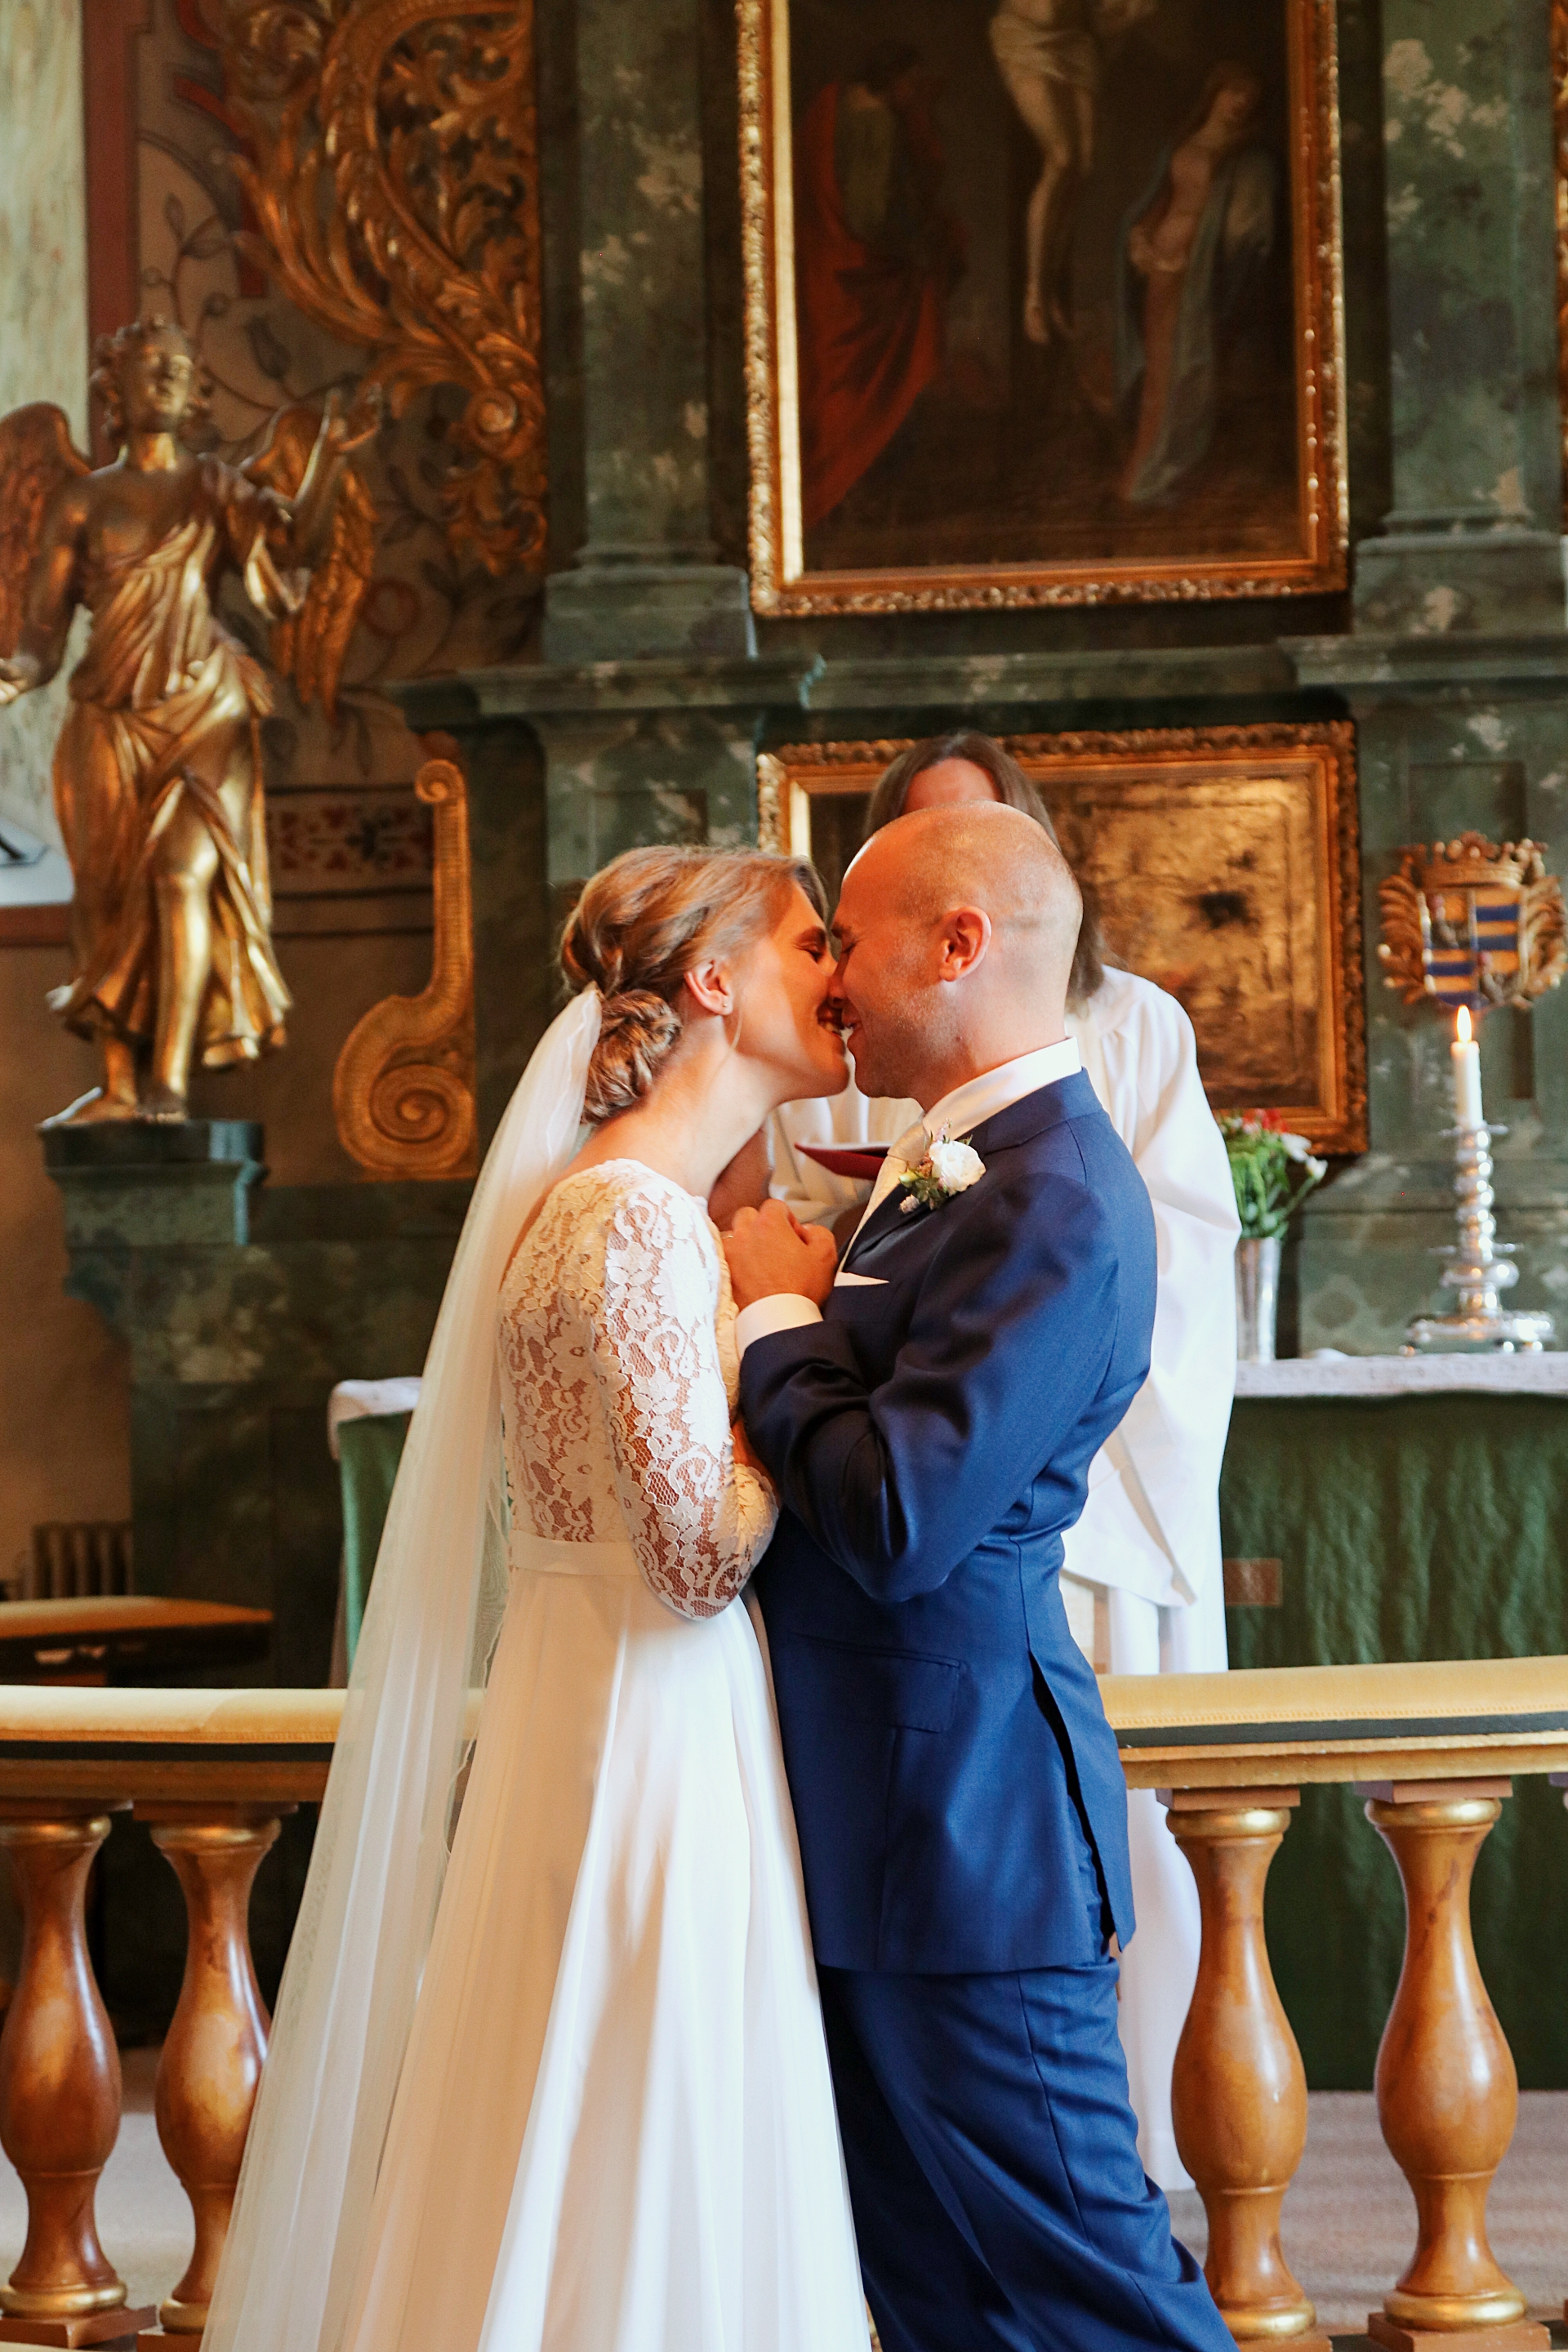 brollop wedding foto photo brud brudgum lantligt skandinaviskt bettna brudpar vigsel kyss